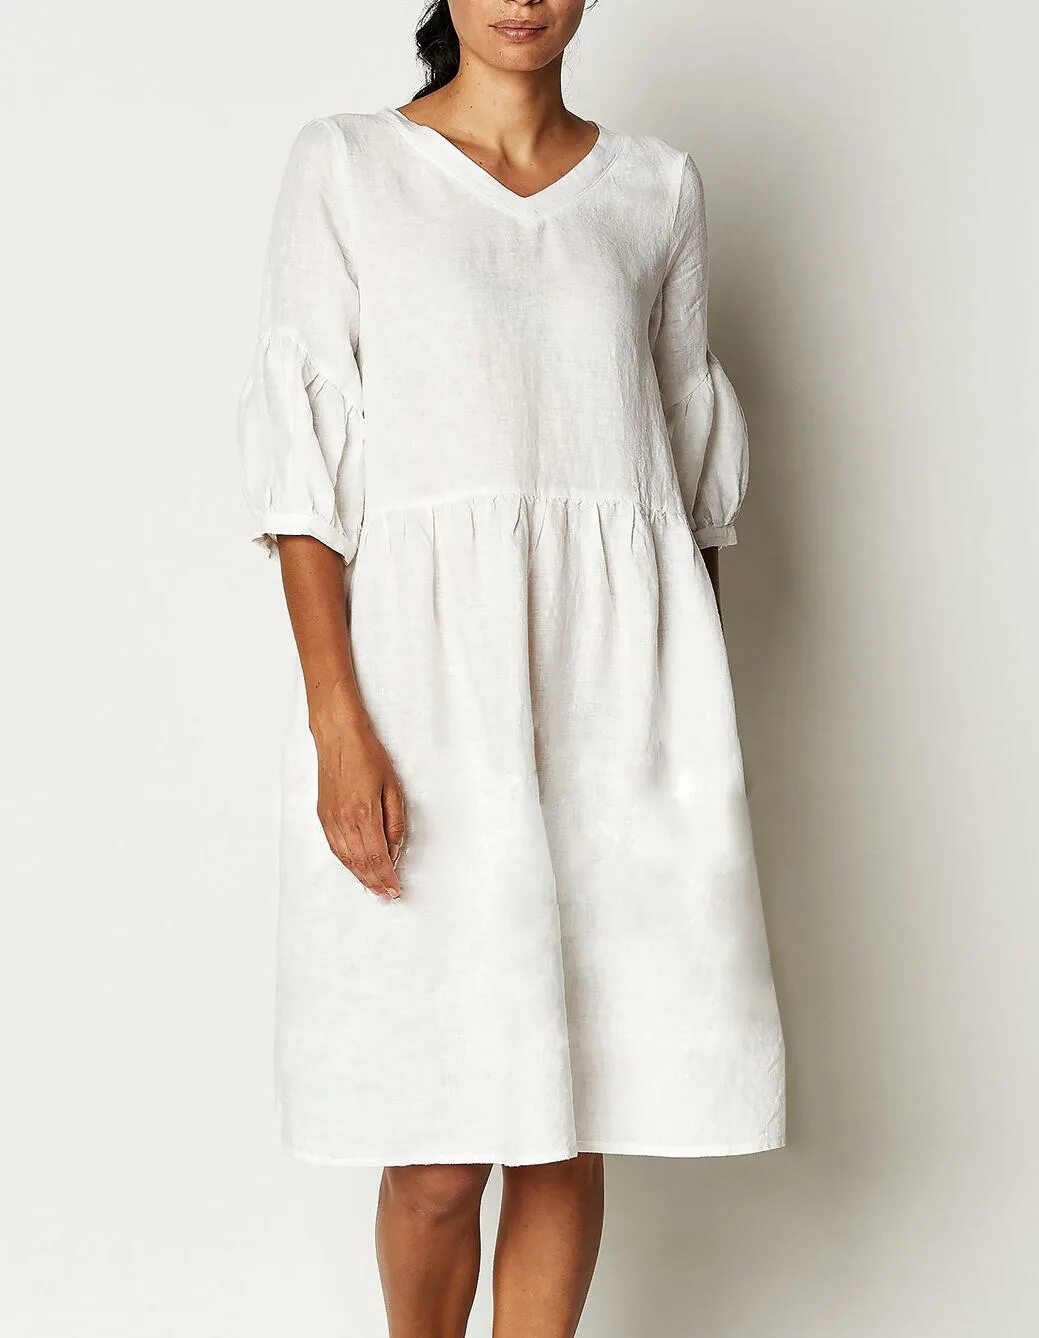 Платье из умягченного льна. Одежда из натурального льна. Платье из натурального льна. Платье лен белое.